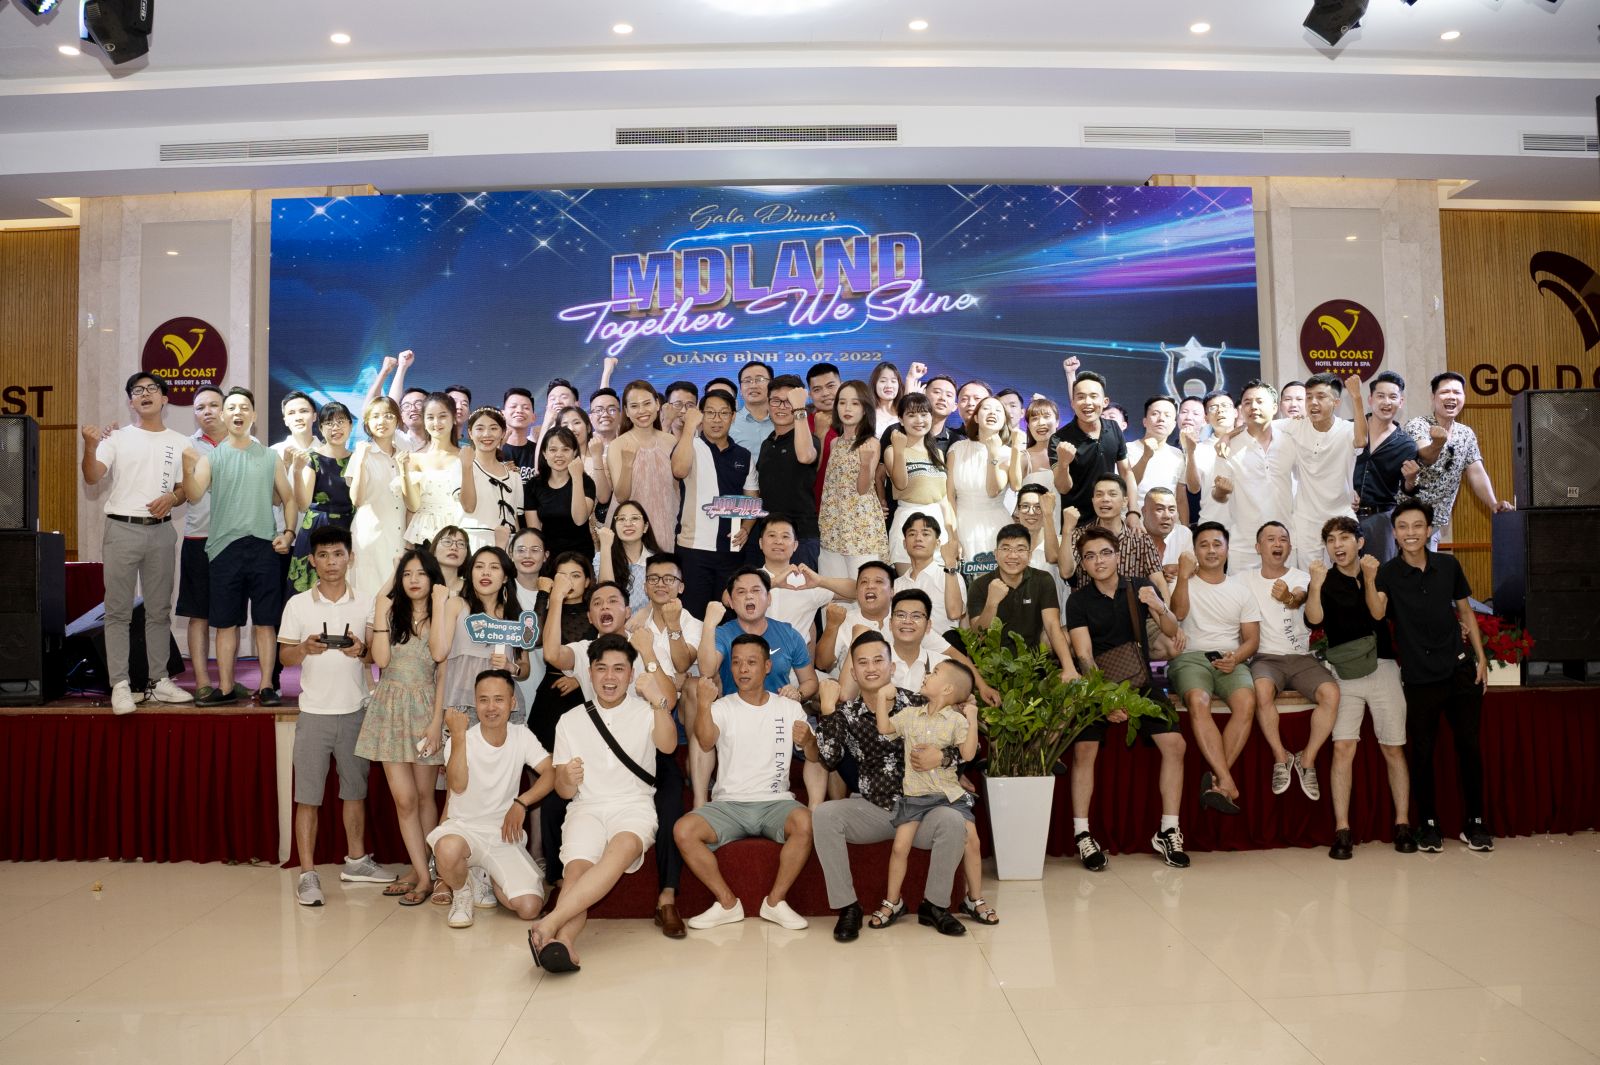 MDLand - Together We Shine: Những phút giây bùng nổ cảm xúc trong hành trình Quảng Bình